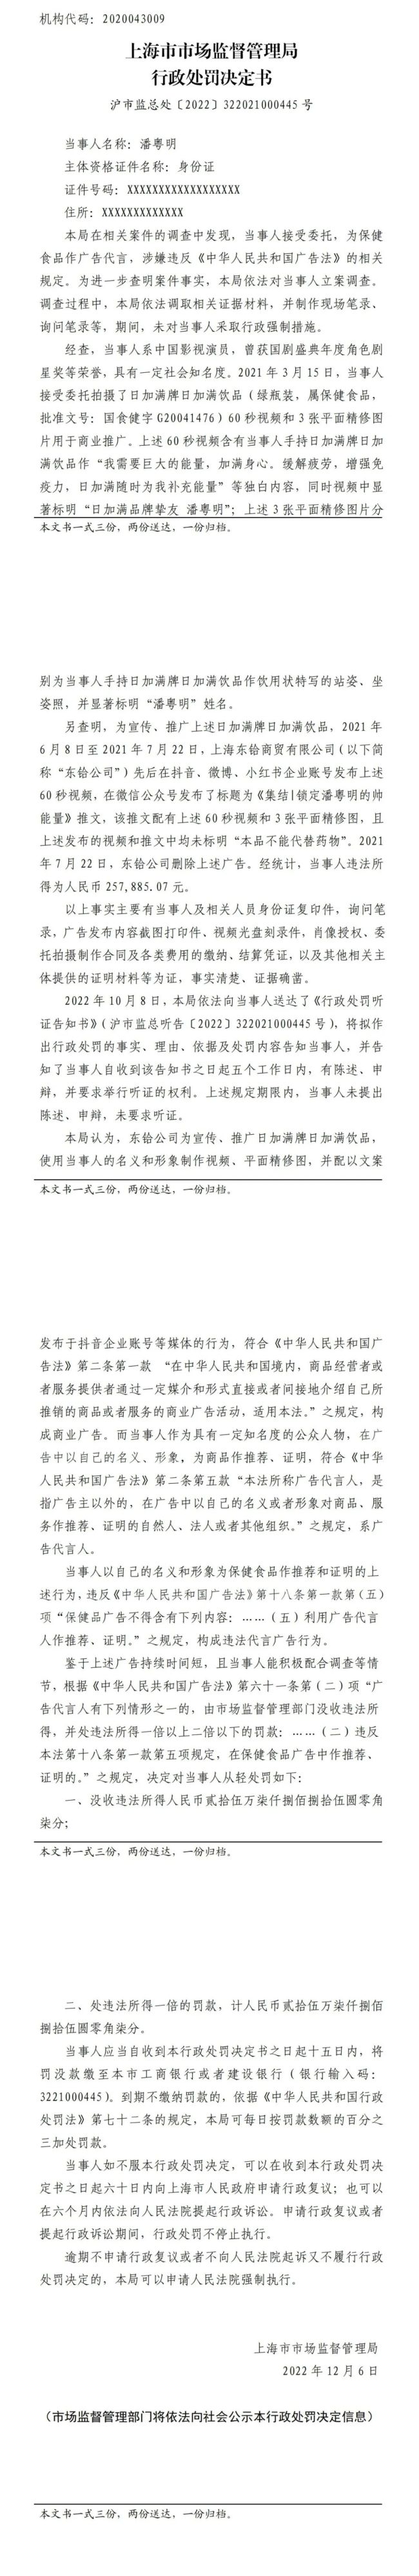 演员潘粤明代言违法保健品广告被罚25.8万元